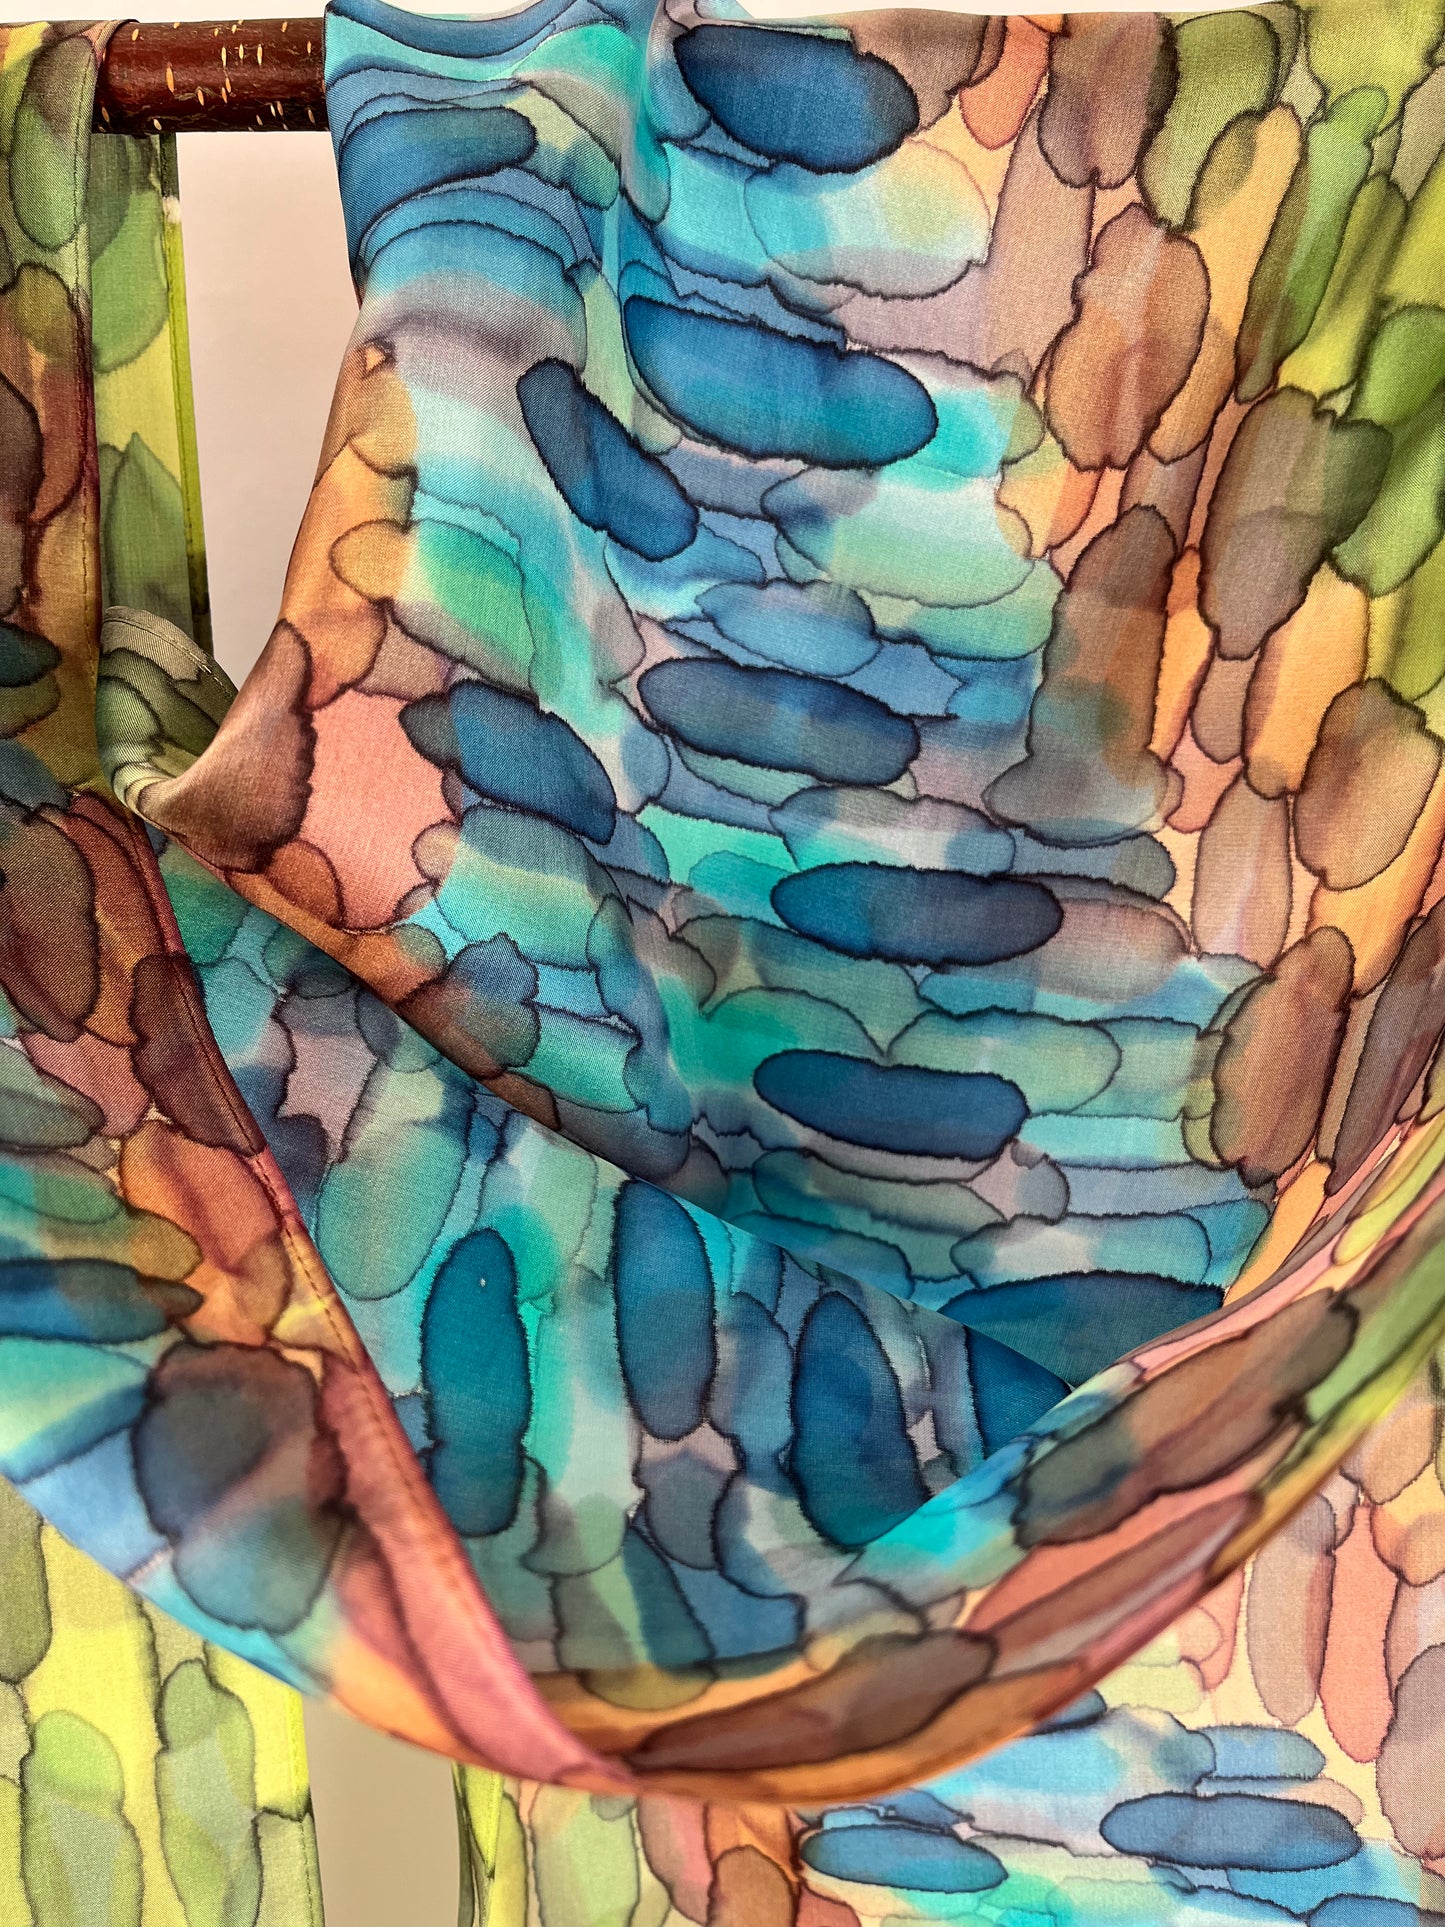 “A River Runs Through It” - Hand-dyed Silk Scarf - $125